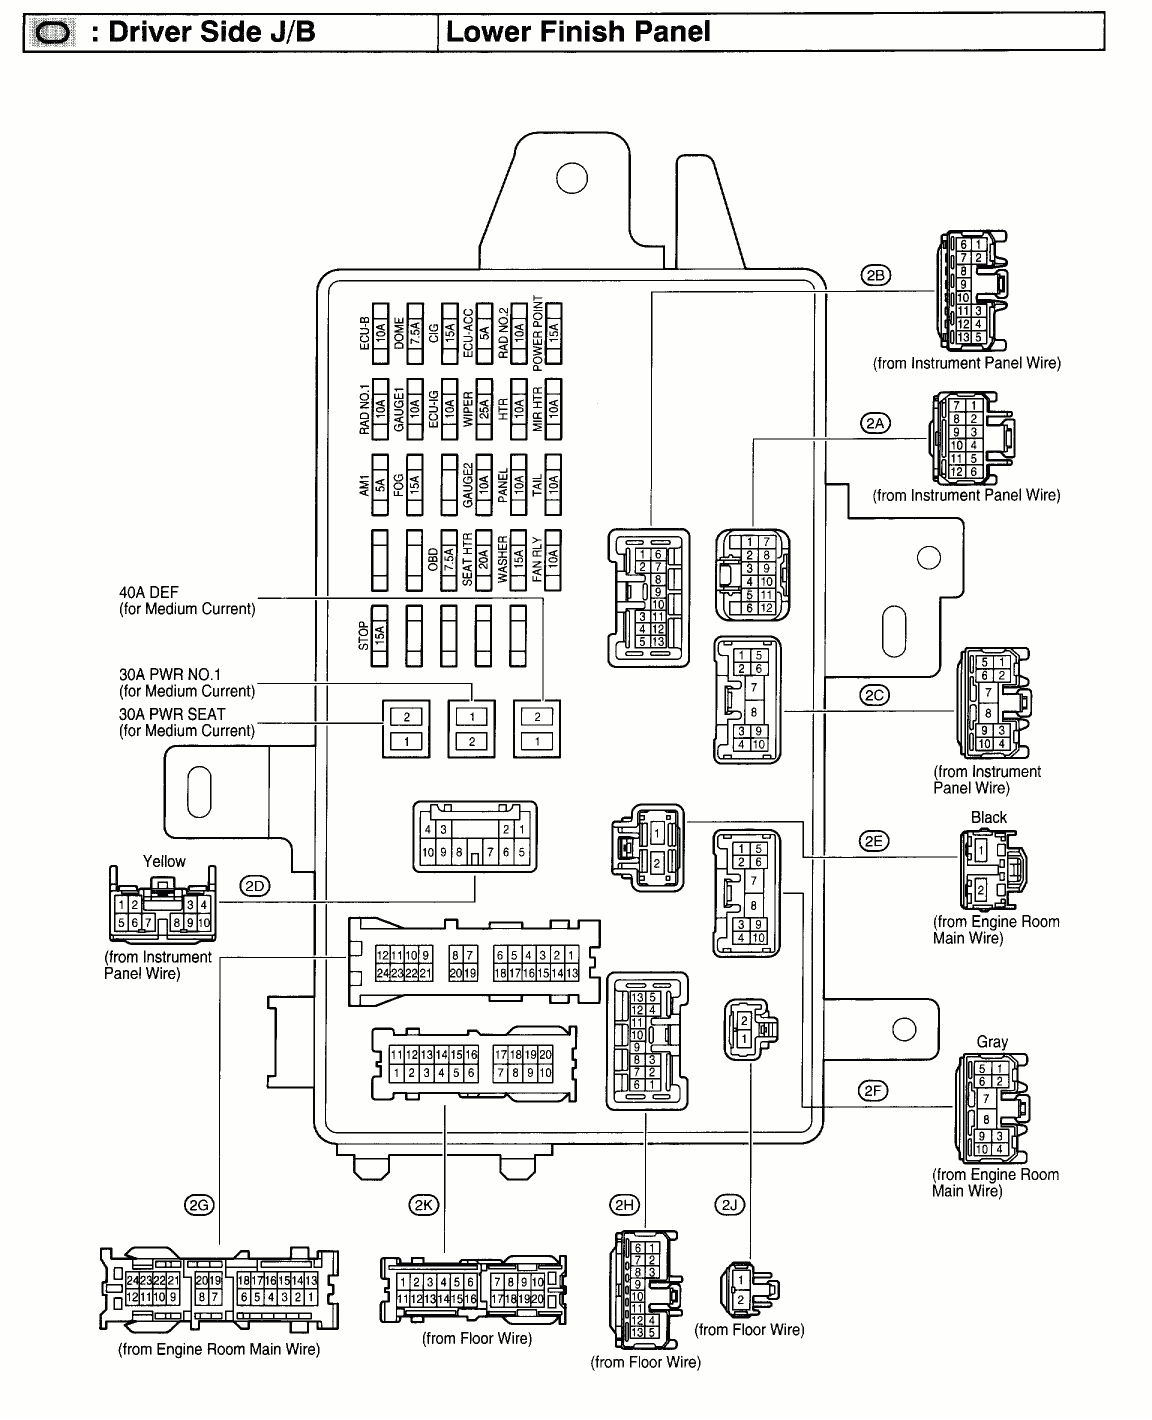 1989 toyota camry fuse diagram auto diagram database mix toyota camry fuse box layout schema diagram